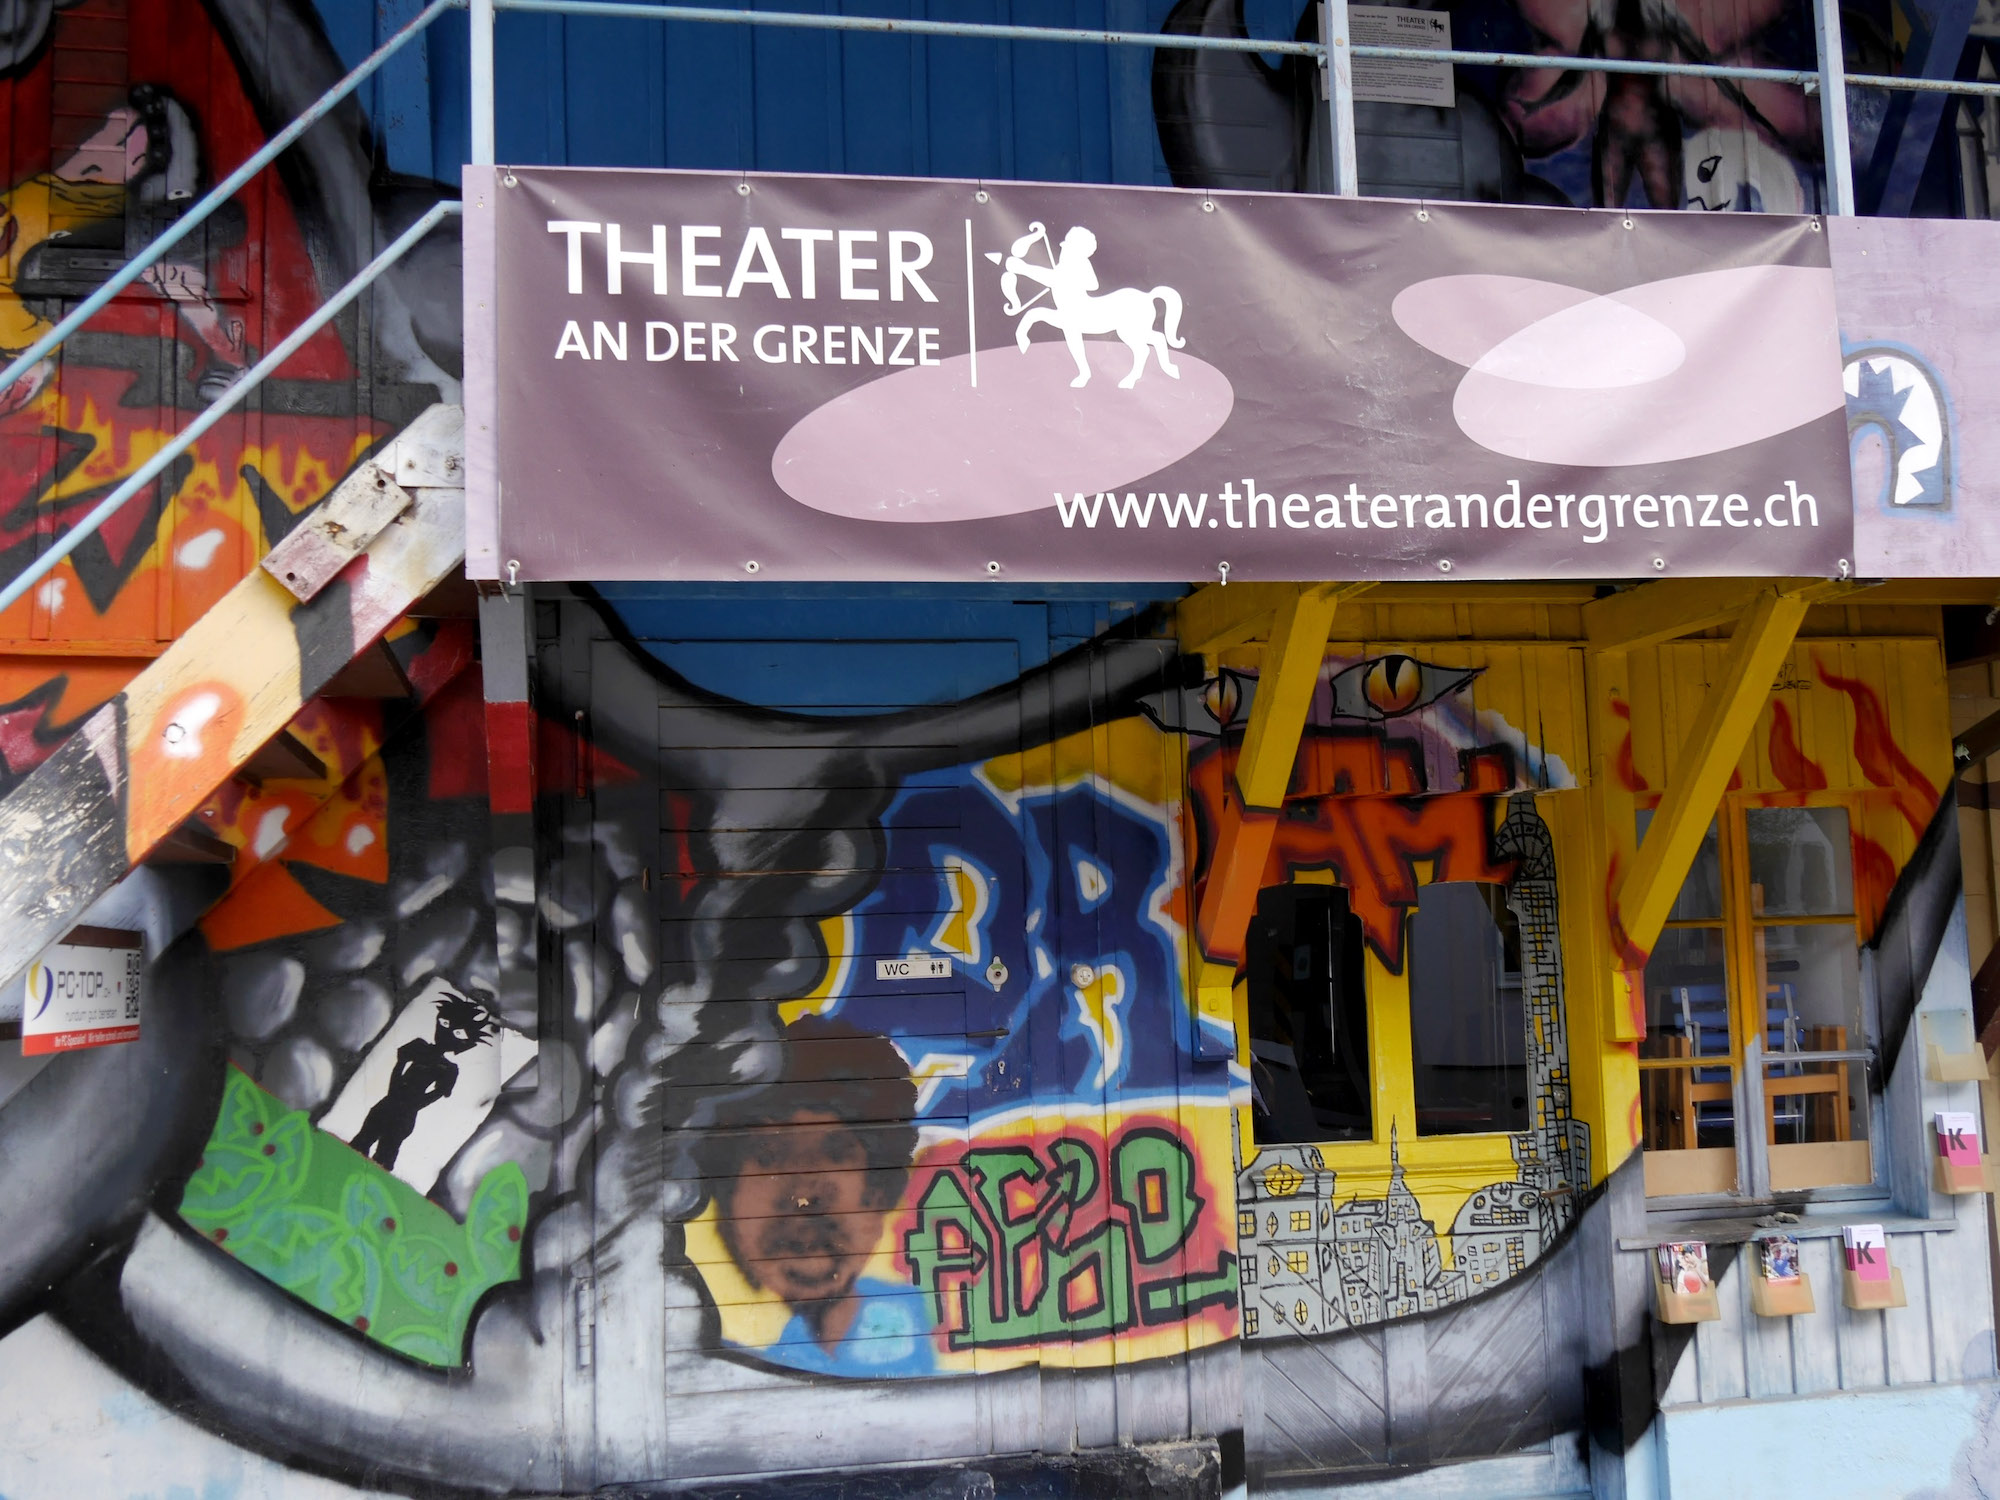 Bunt ist das Theater an der Grenze nicht nur an der Fassade, sondern auch inhaltlich. Zu sehen sind Kabarett, Comedy und Schauspiel von Schweizer und deutschen Künstlern.